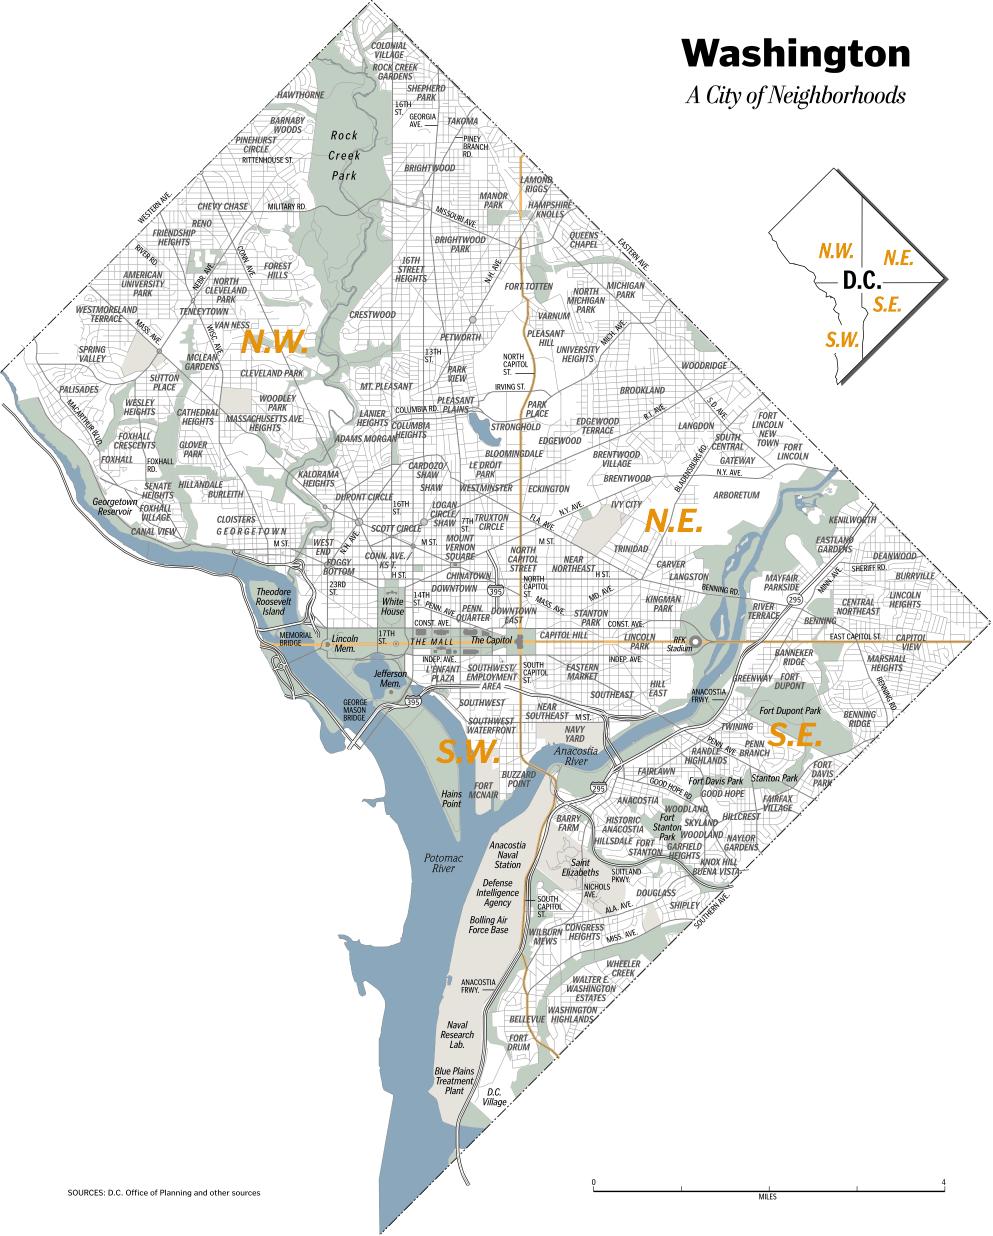 Dc neighborhood map - Washington dc neighborhood map (District of ...